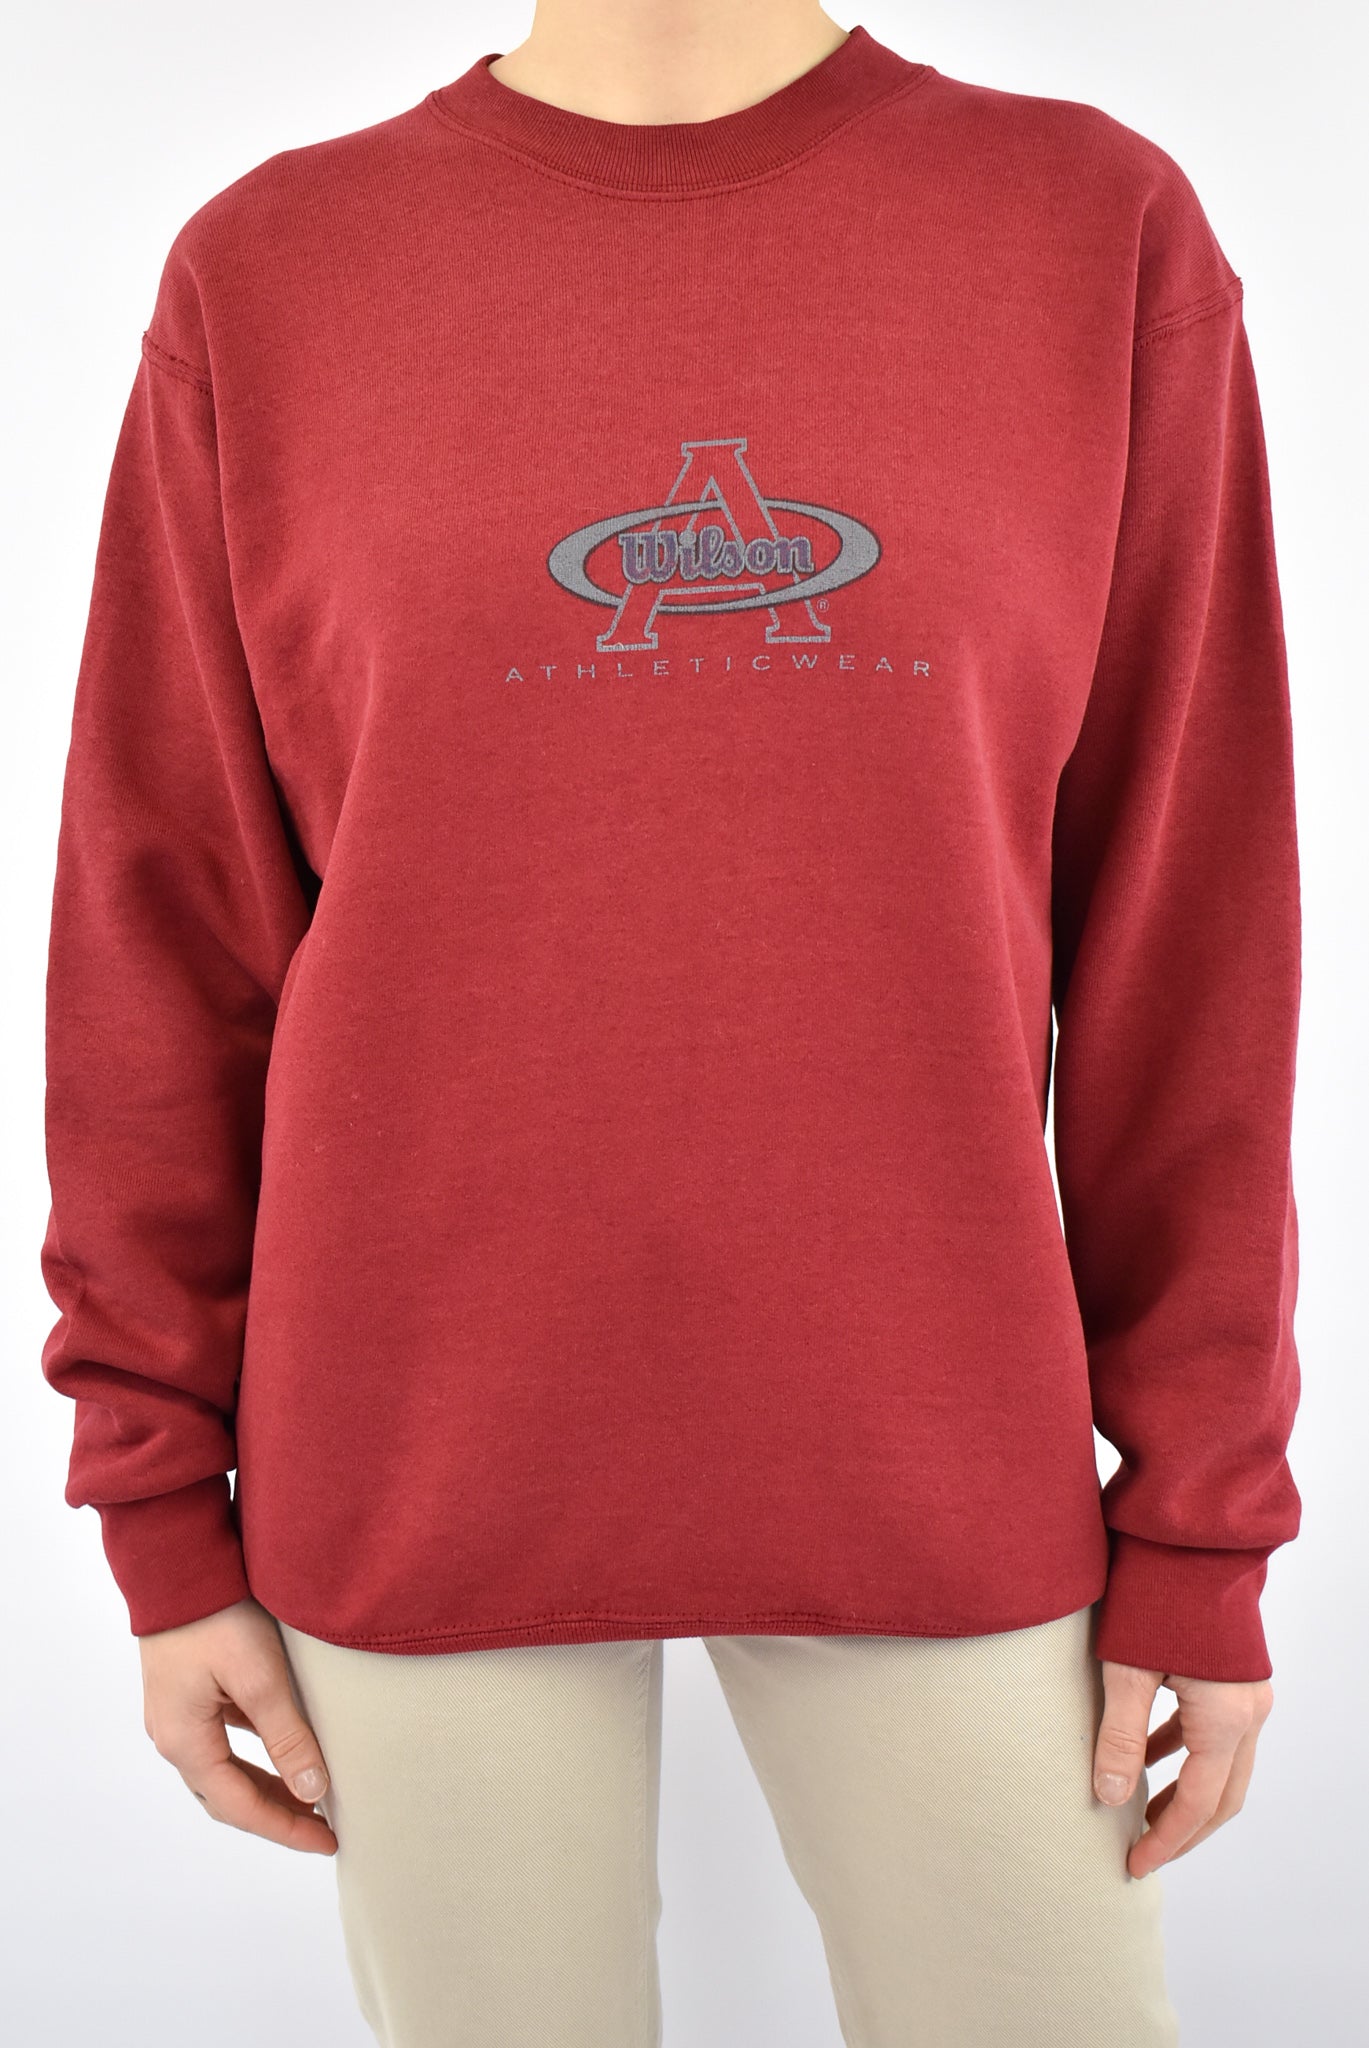 Wilson Athletic Wear Red Sweatshirt – Vintage Fabrik